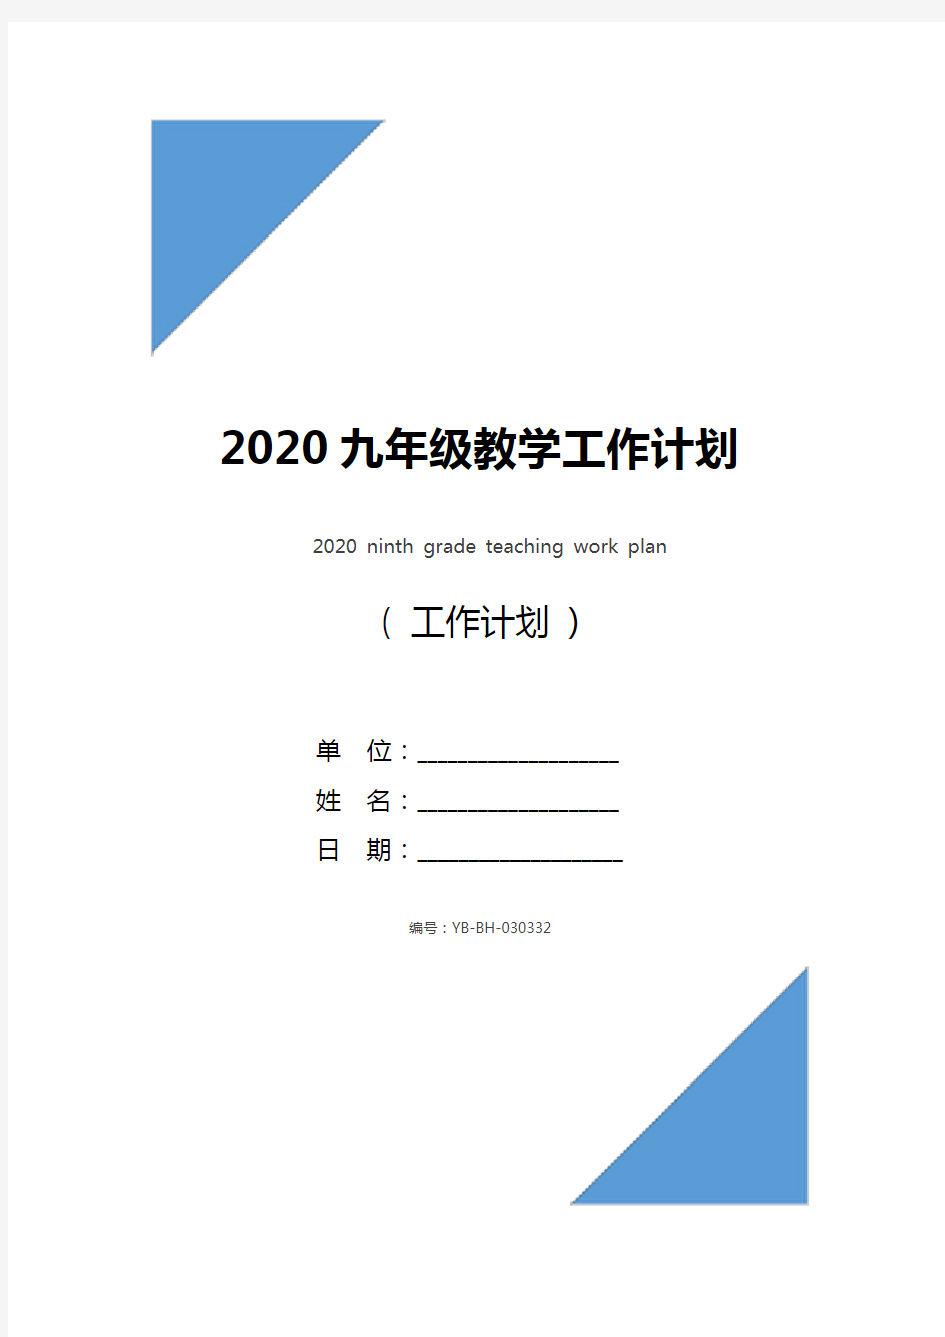 2020九年级教学工作计划